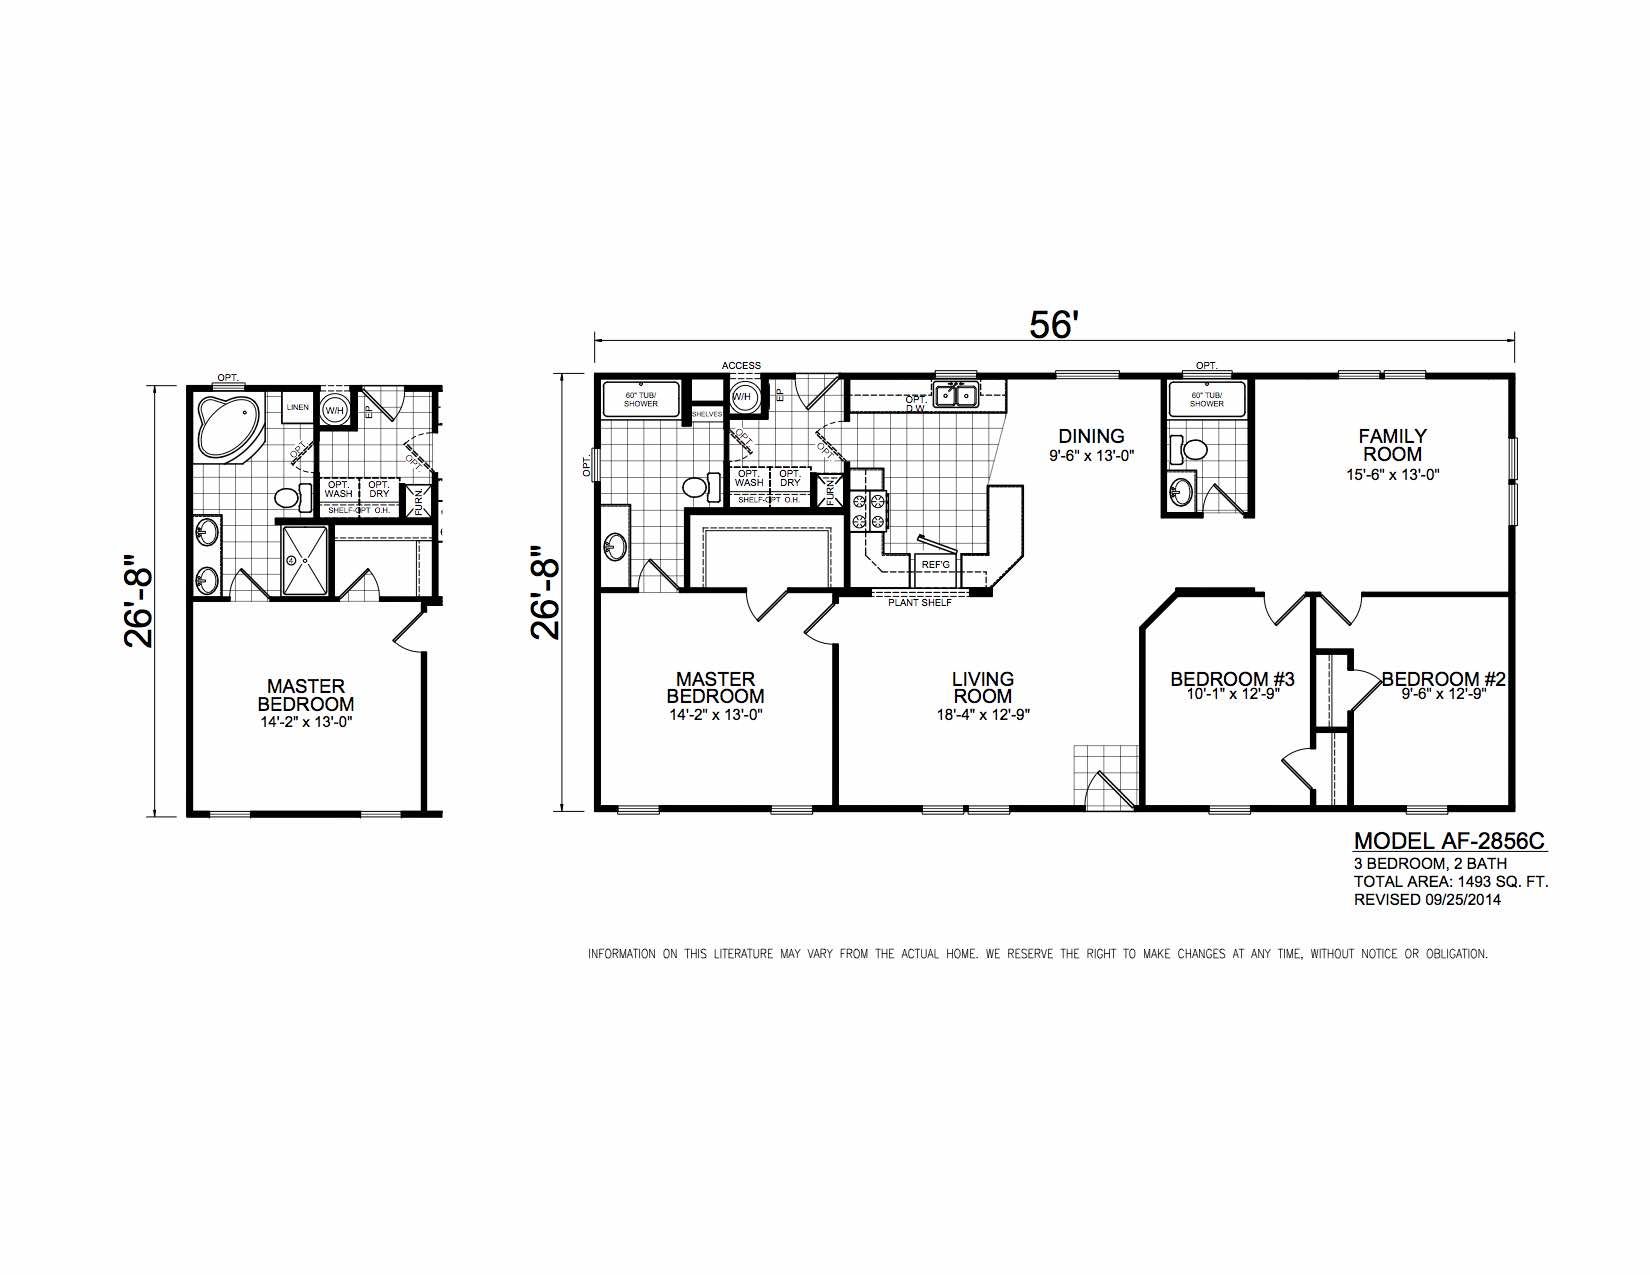 Homes Direct Modular Homes - Model AF2856C - Floorplan